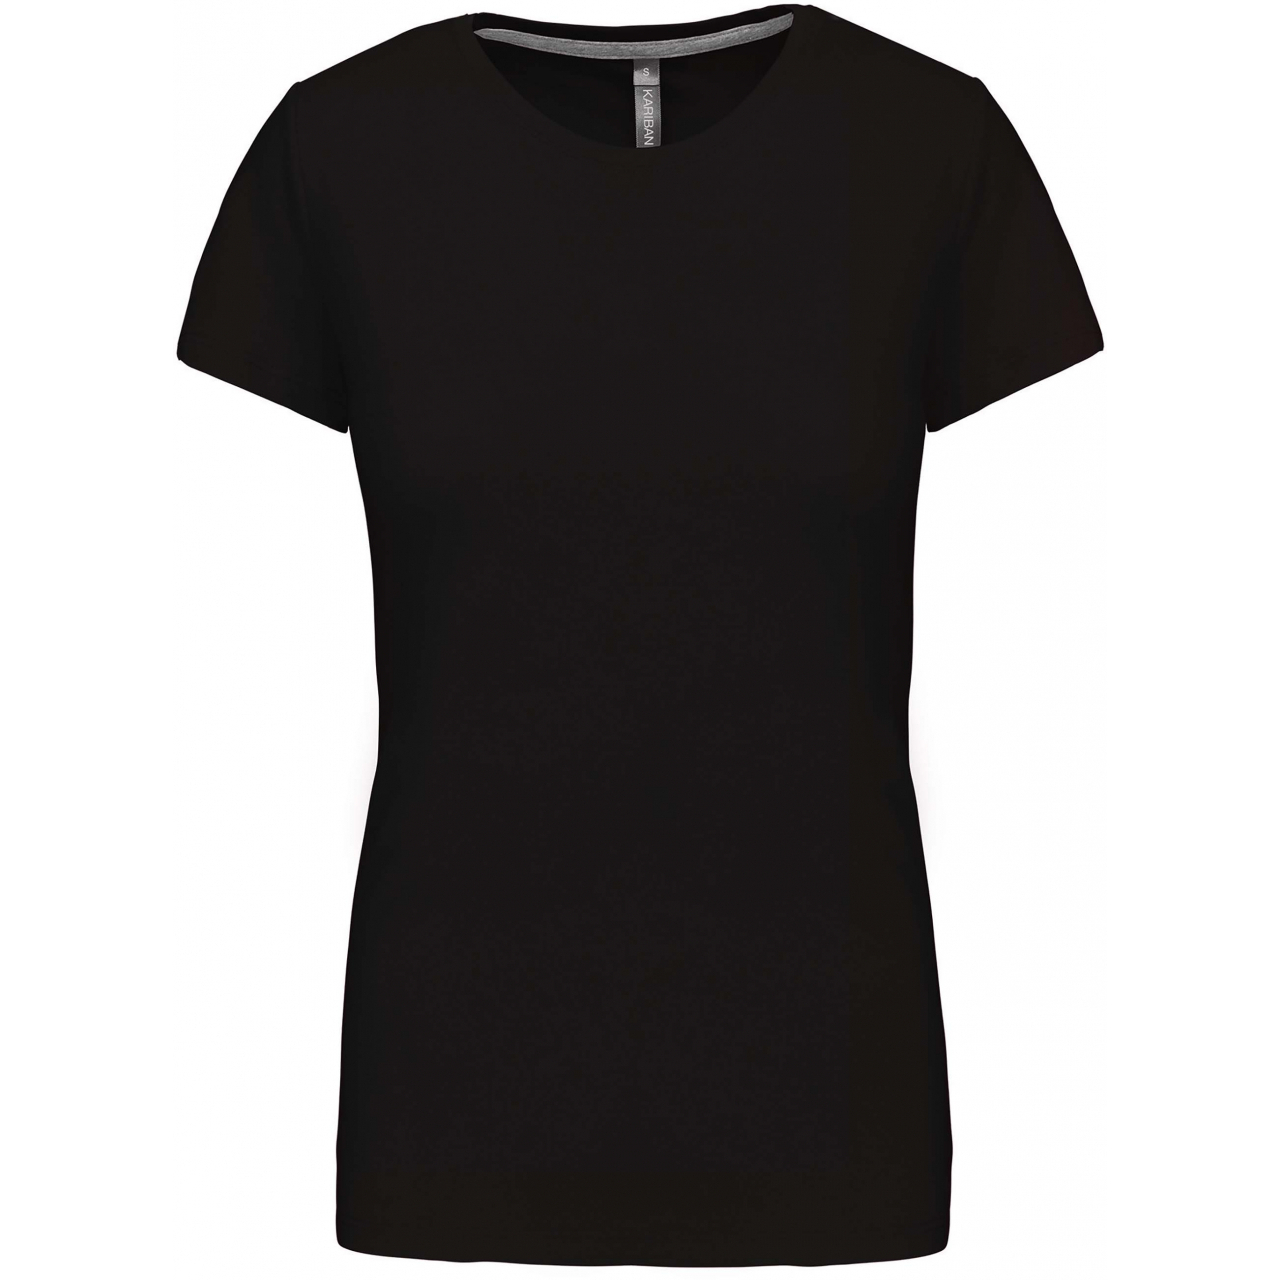 Dámské tričko Kariban s krátkým rukávem - černé, XL